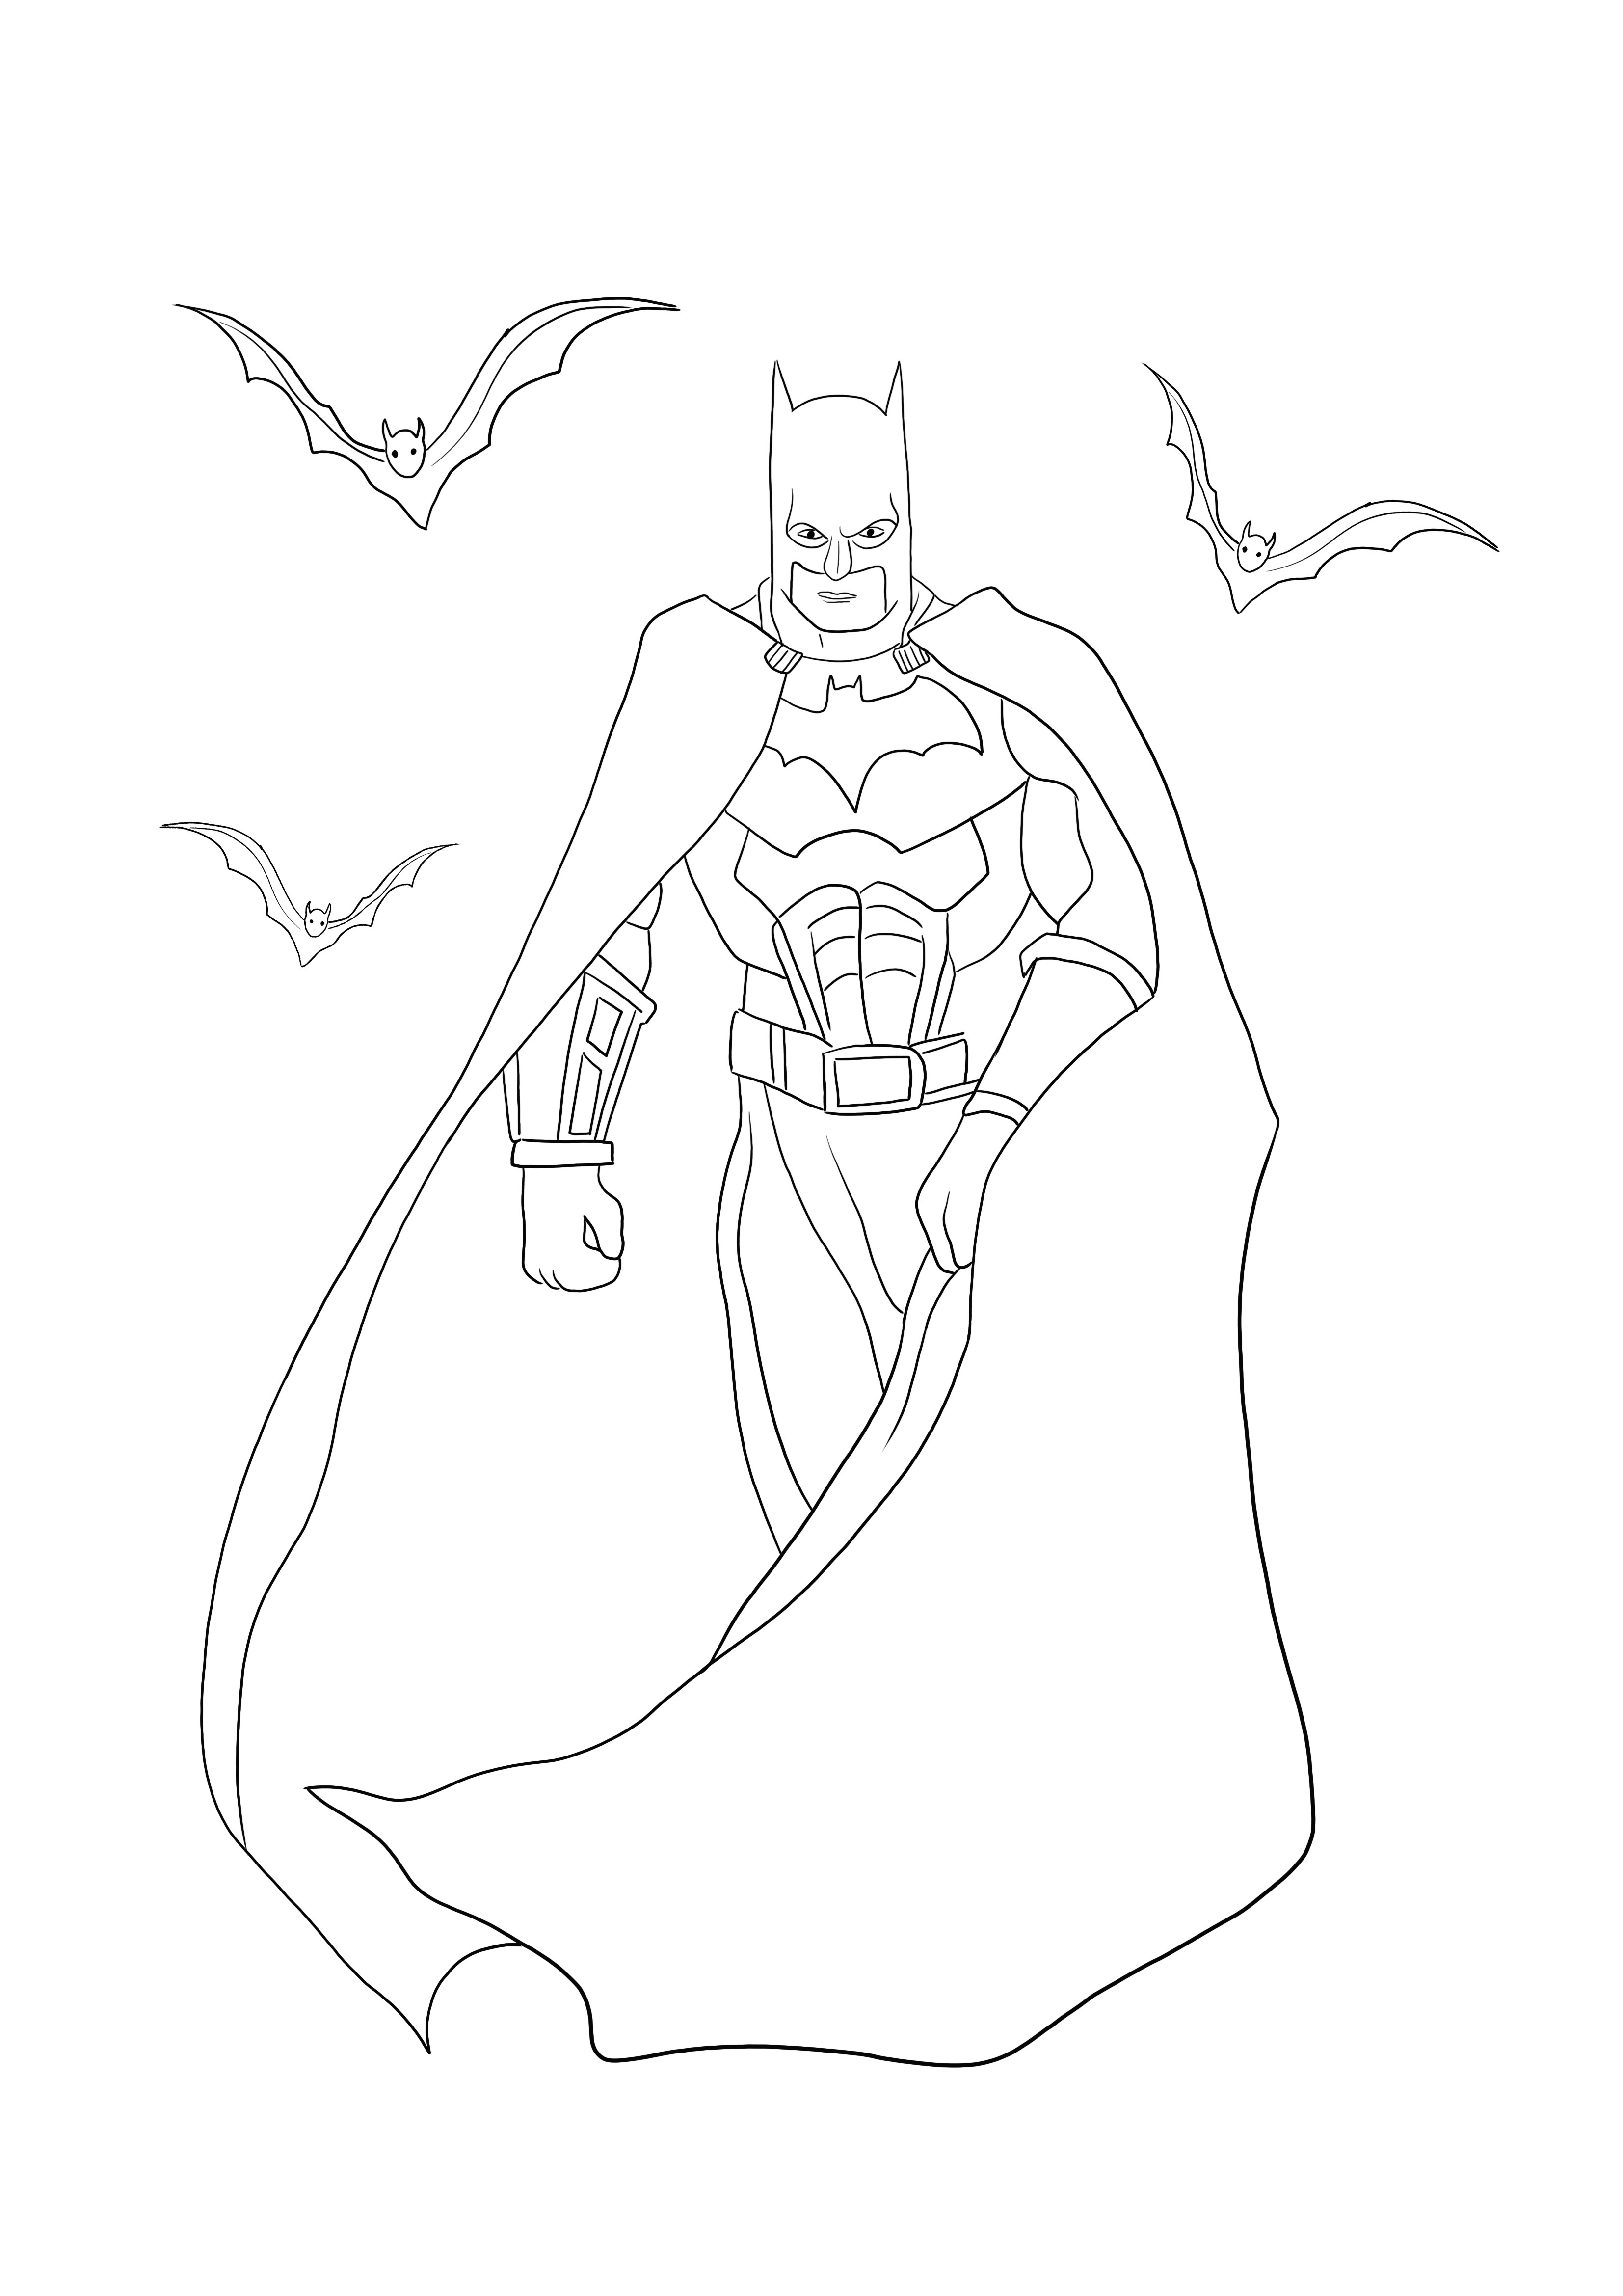 A Batman with Bats színező oldal ingyenesen letölthető vagy kinyomtatható, hogy jól érezd magad